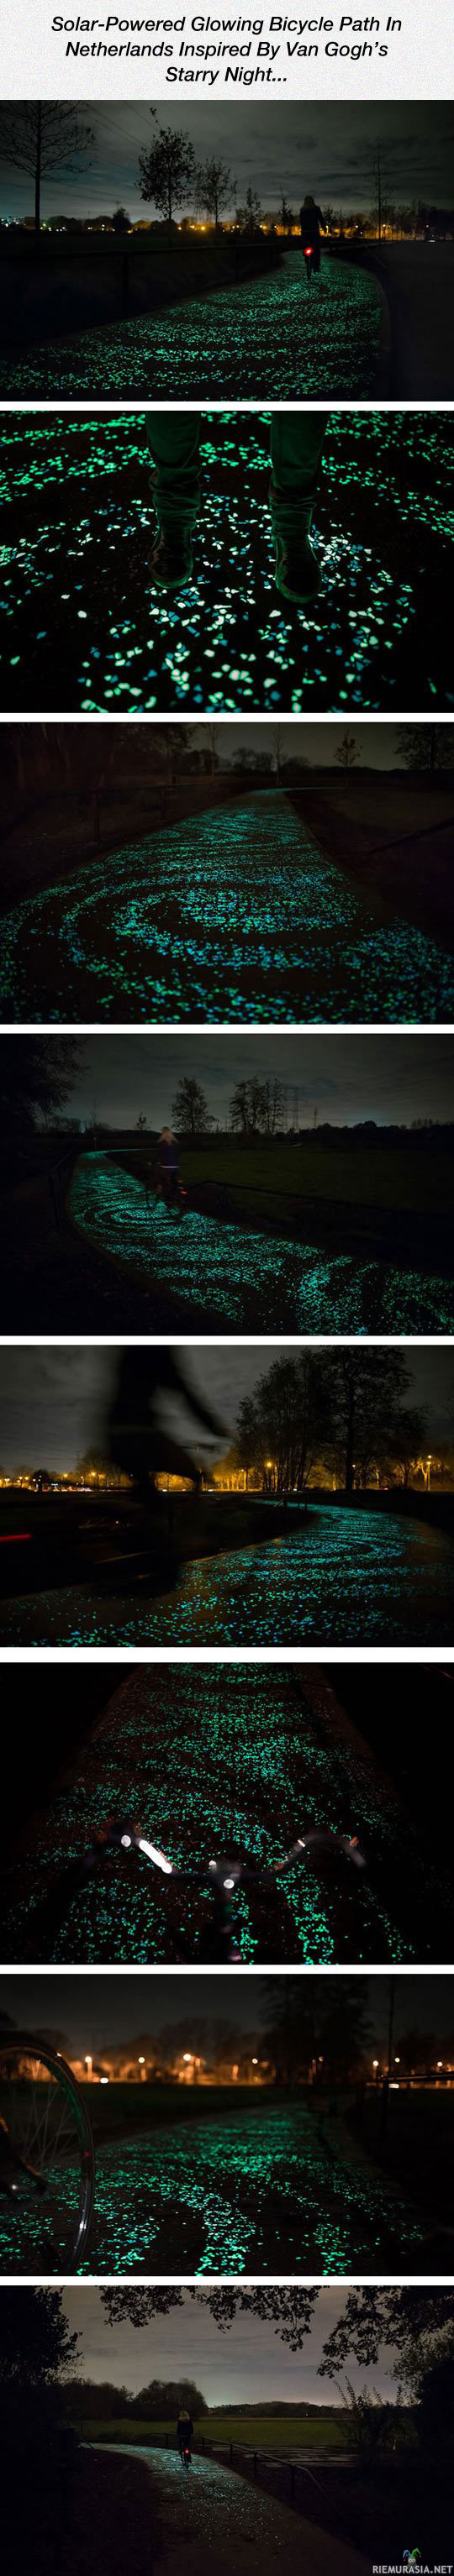 Pimeässä hohtava pöyrätie - Van Goghin kuuluisan maalauksen inspiroima valaistus pyörätielle